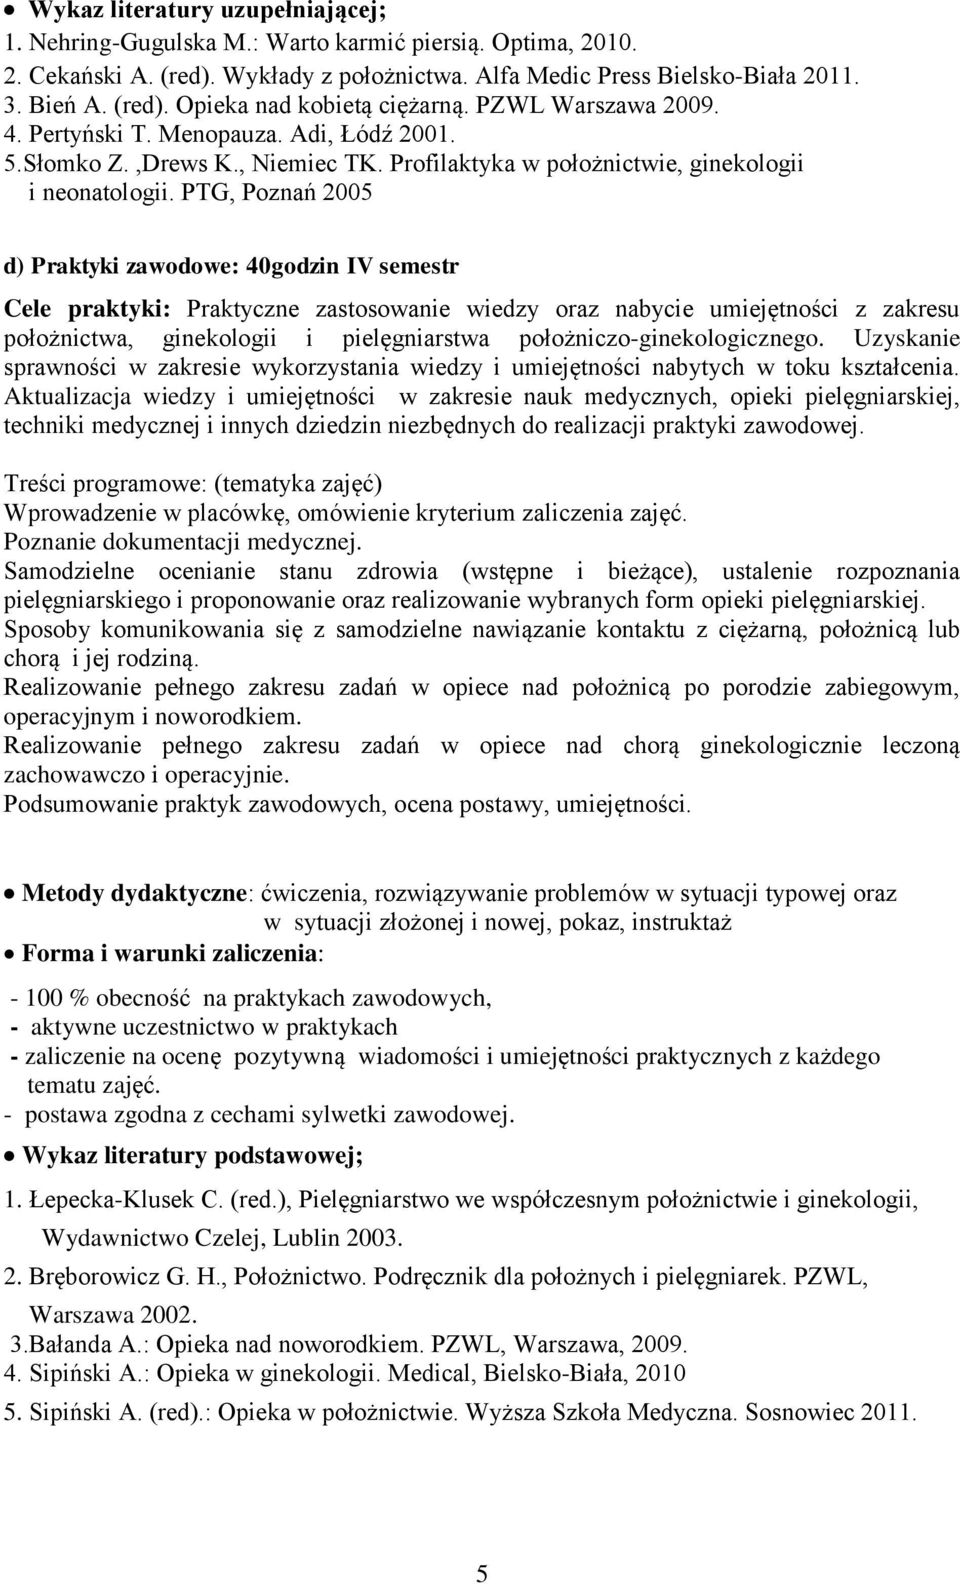 PTG, Poznań 2005 d) Pra : 40godzin IV semestr Cele pra: Praktyczne zastosowanie wiedzy oraz nabycie umiejętności z zakresu położnictwa, ginekologii i pielęgniarstwa położniczo-ginekologicznego.